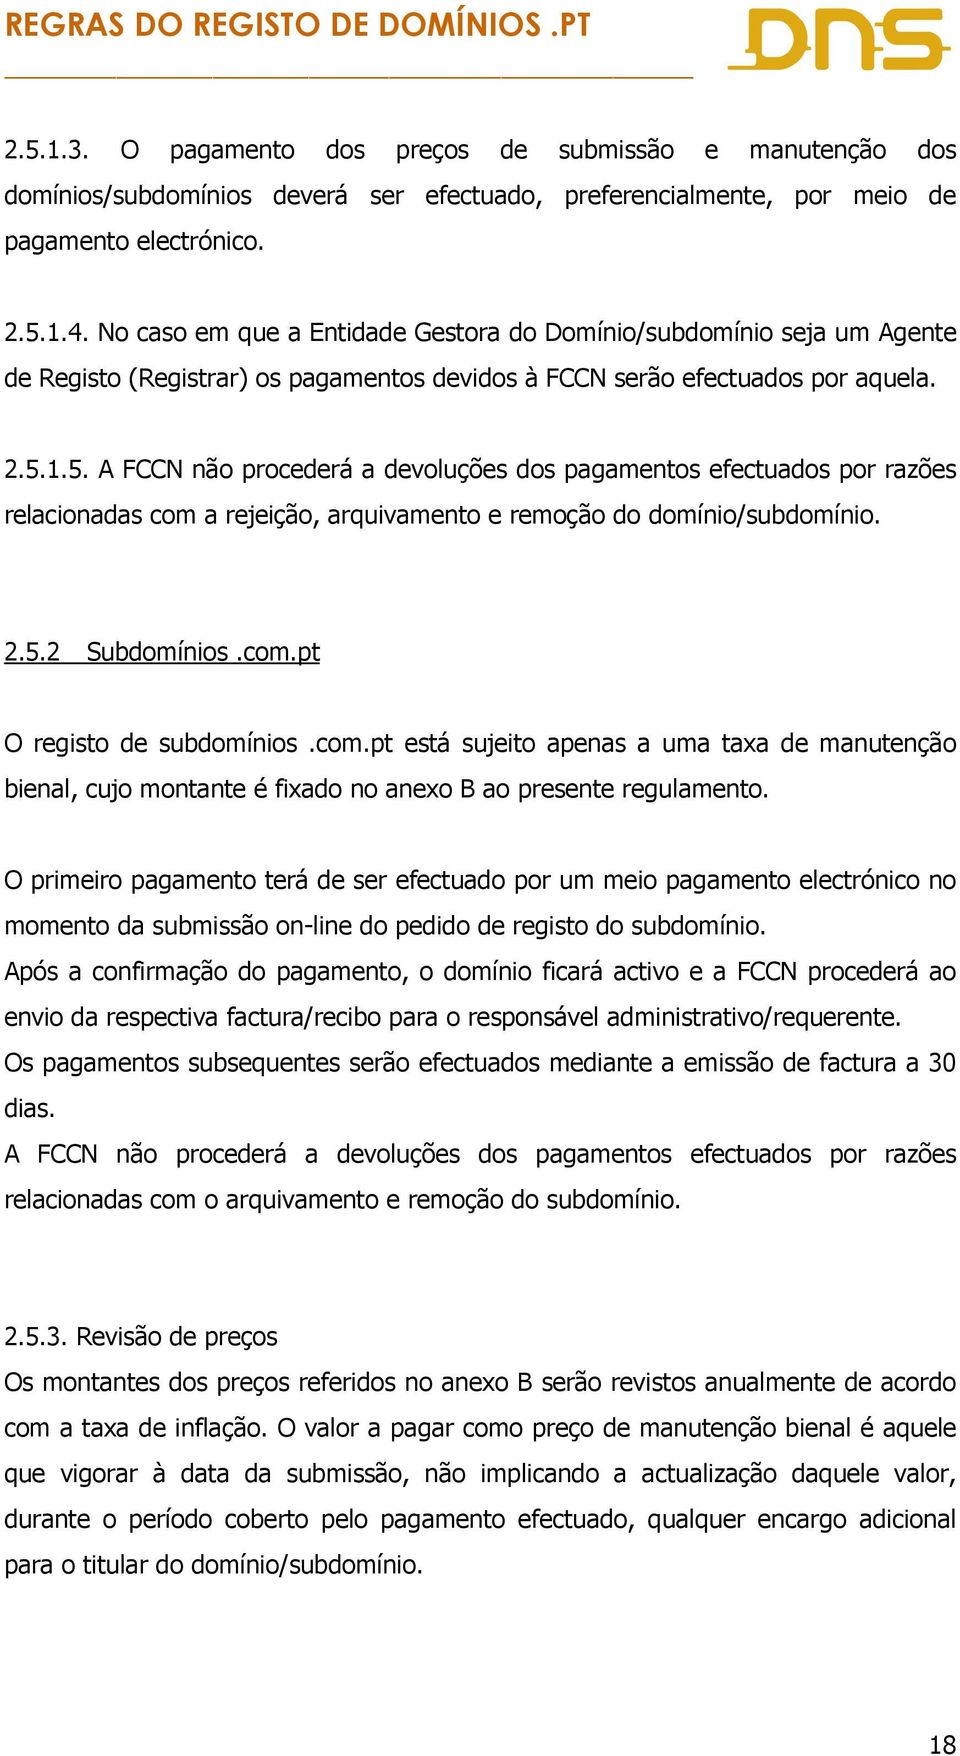 1.5. A FCCN não procederá a devoluções dos pagamentos efectuados por razões relacionadas com a rejeição, arquivamento e remoção do domínio/subdomínio. 2.5.2 Subdomínios.com.pt O registo de subdomínios.